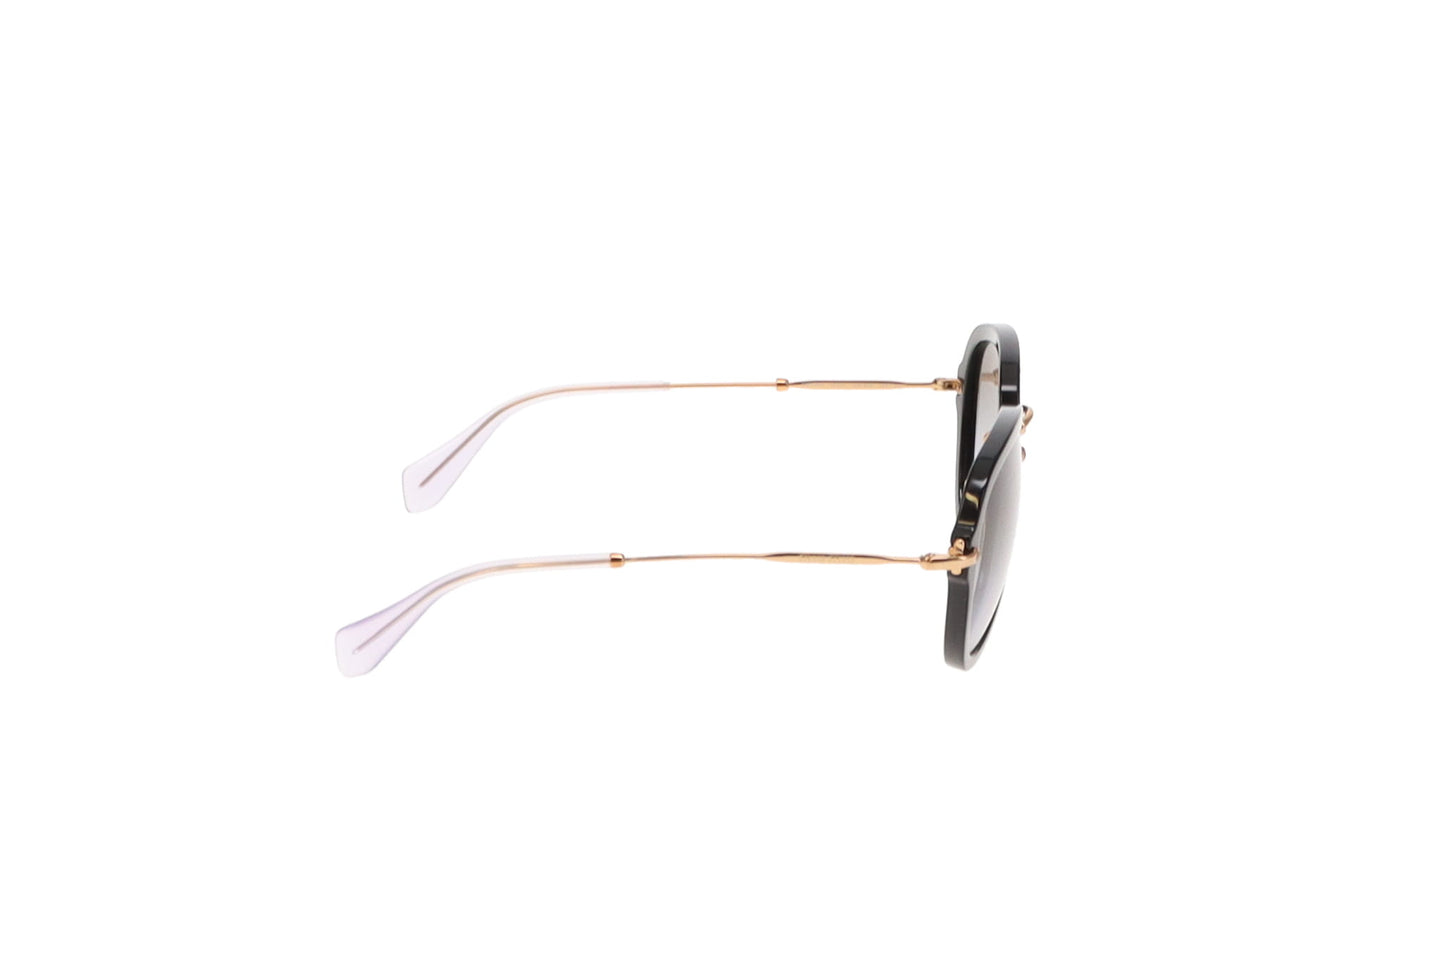 Miu Miu SMU03Q Black and Gold Aviator Style Sunglasses